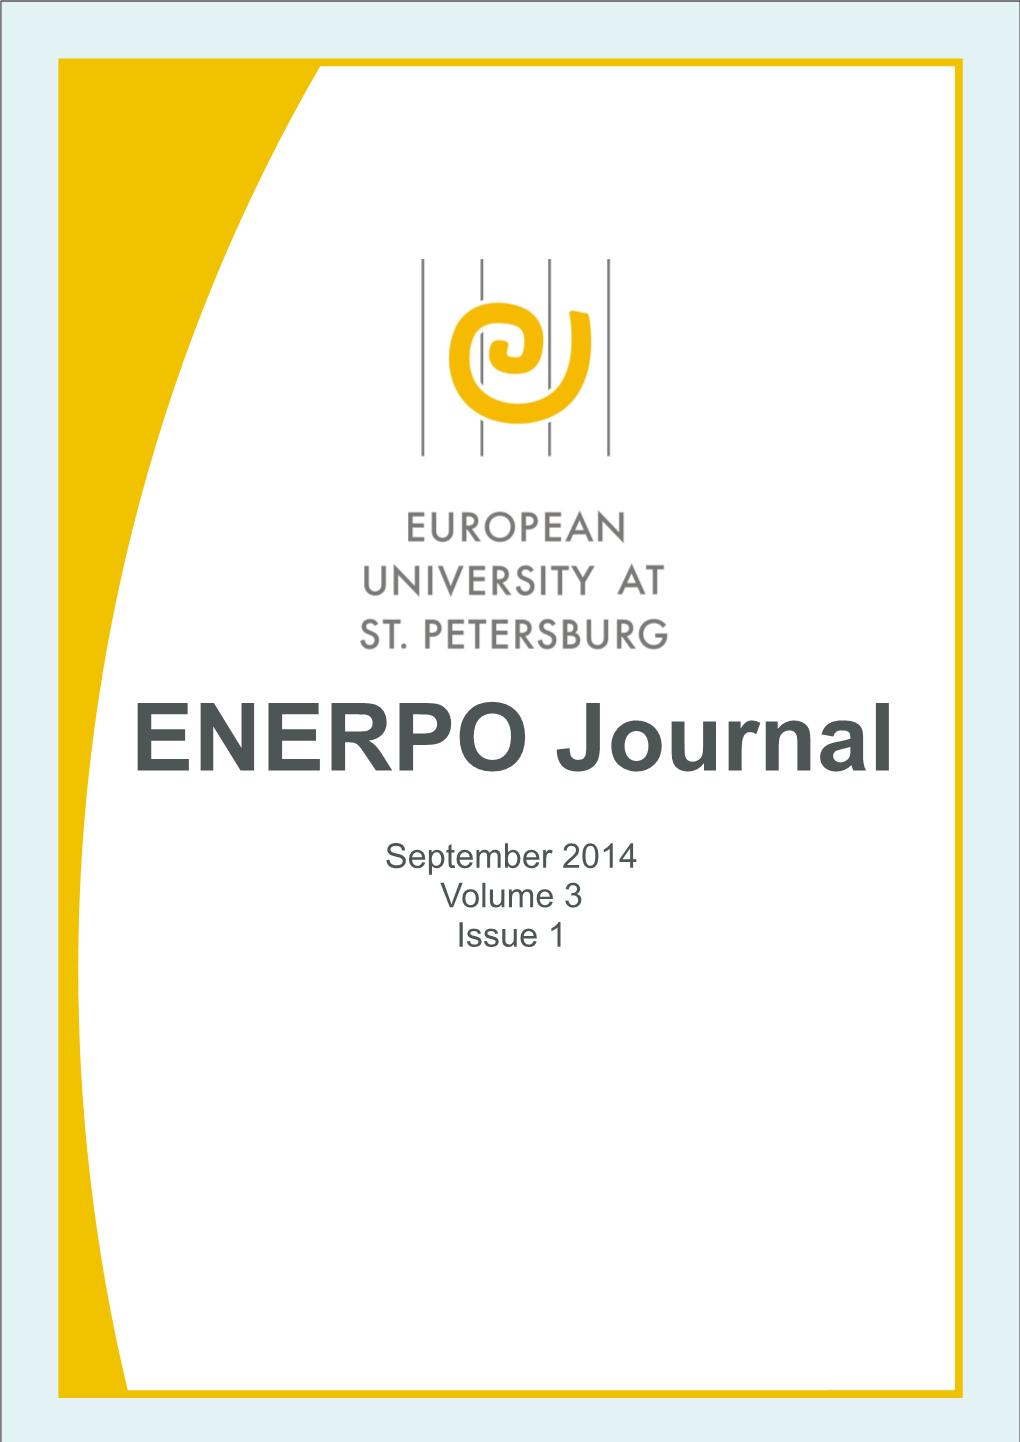 ENERPO Journal